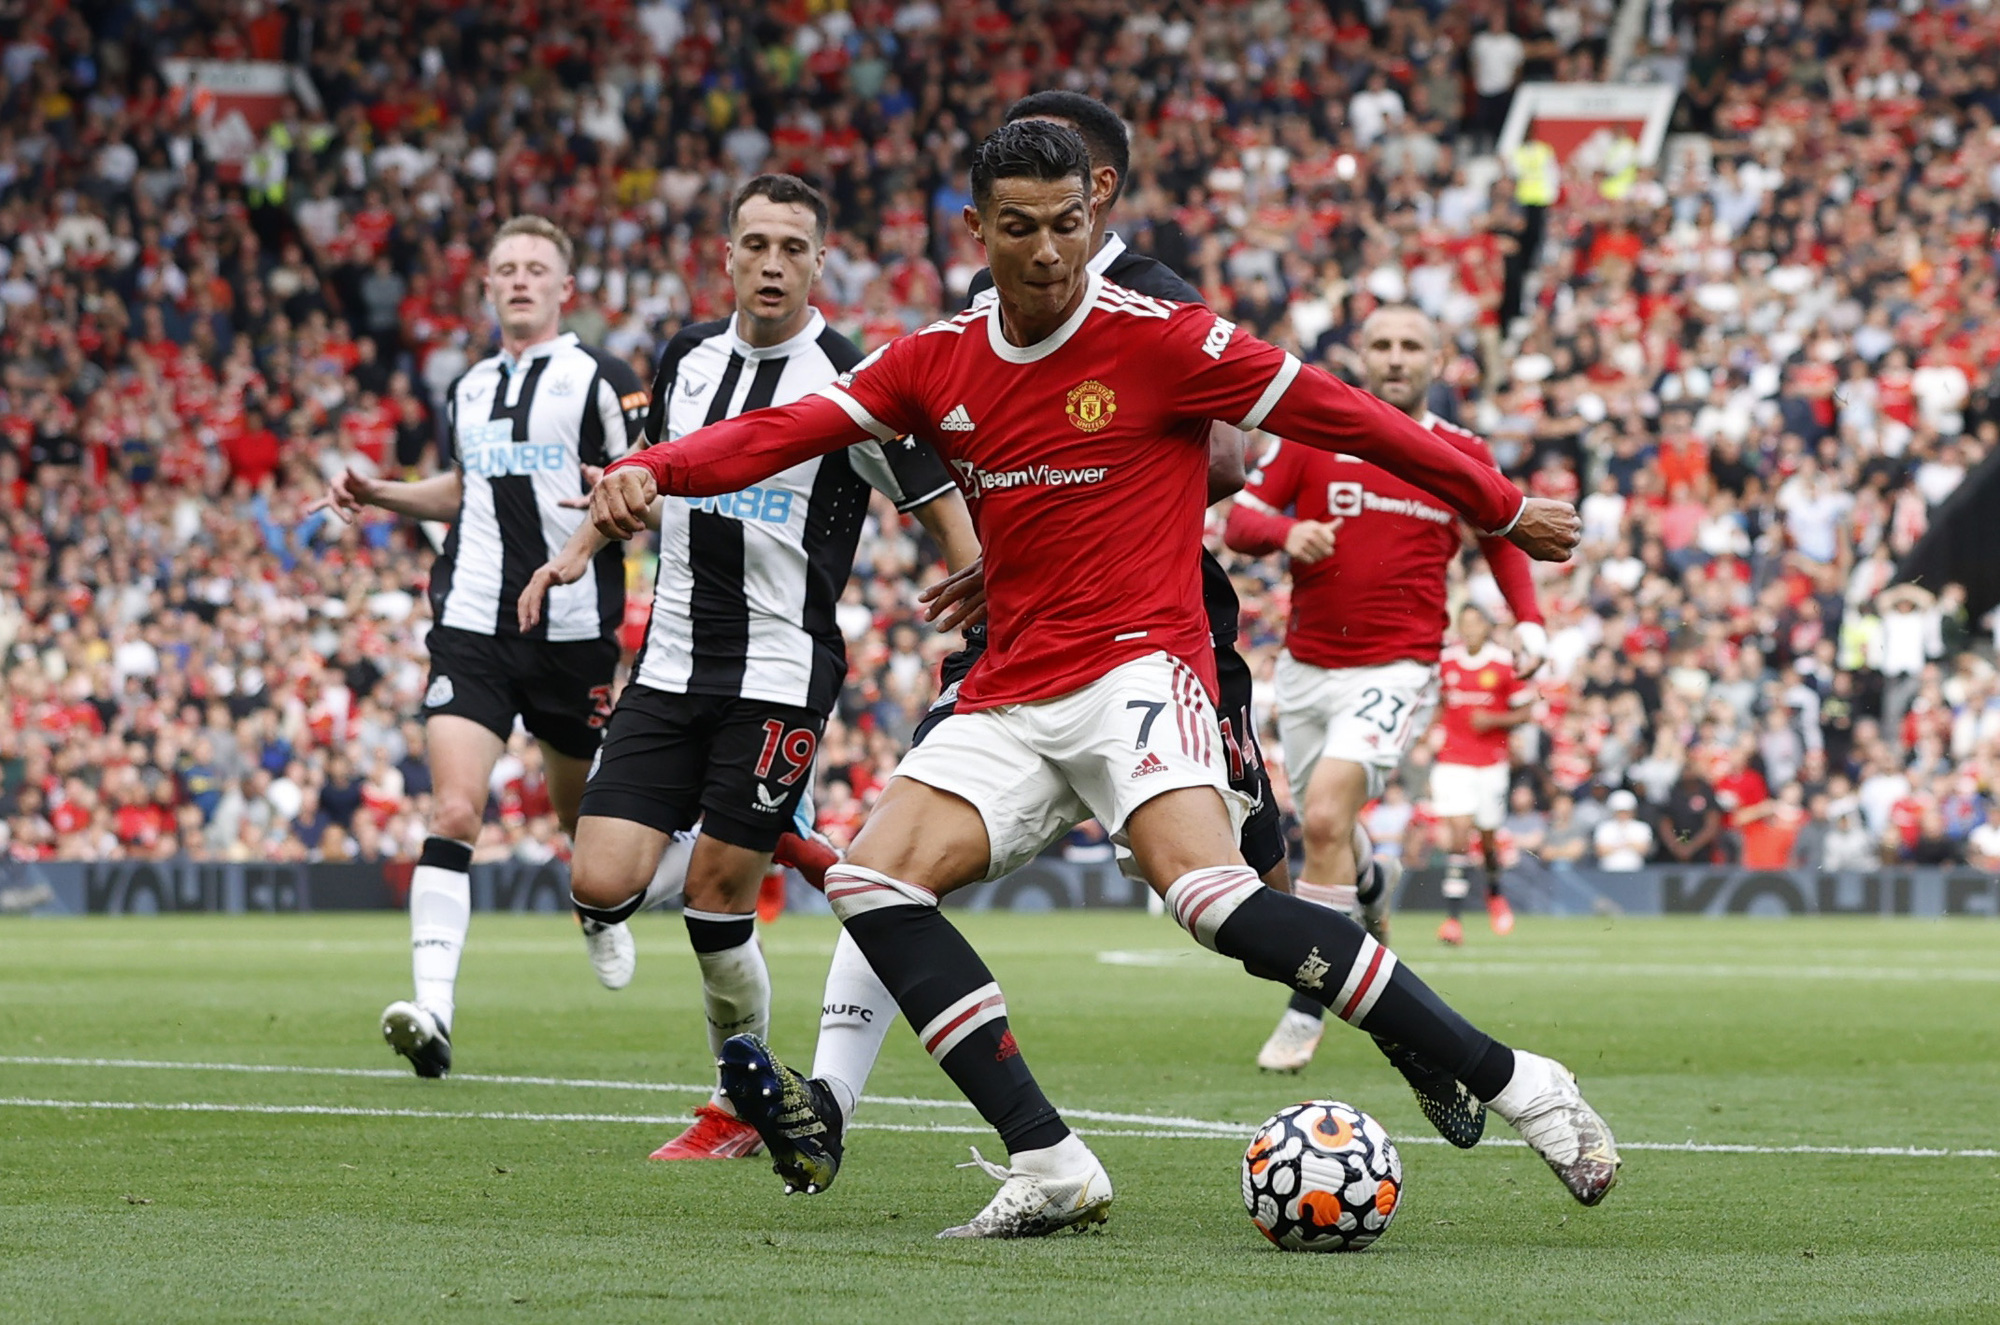 Ronaldo xung trận với Man United, Young Boys khó tránh thất bại Champions League - Ảnh 1.